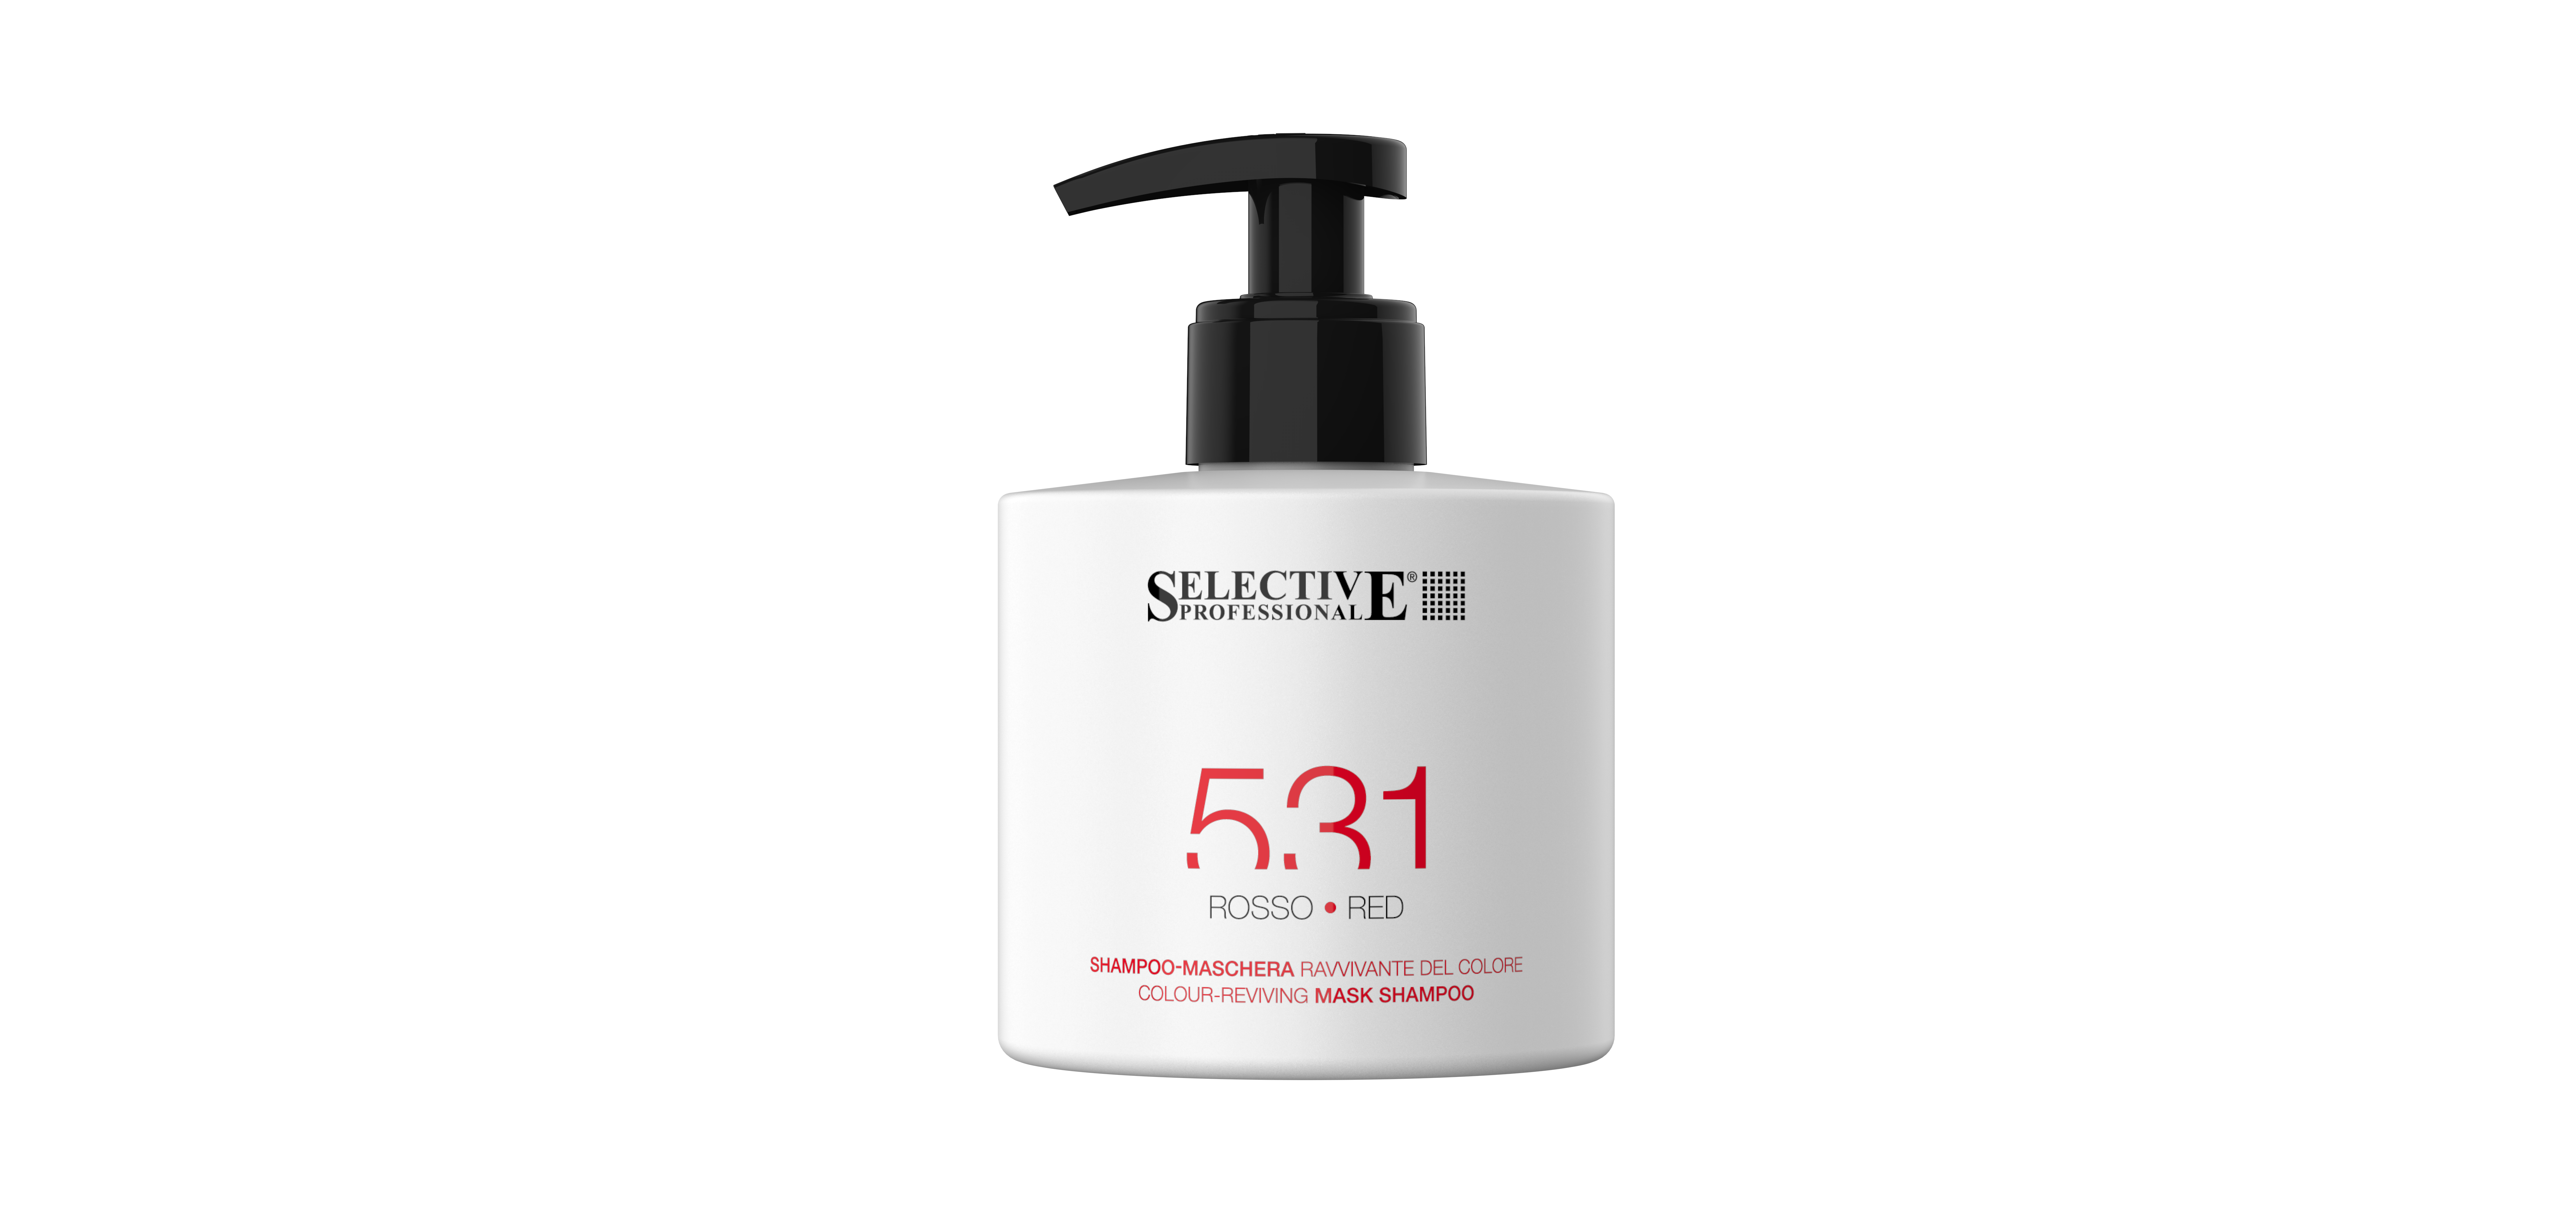 Шампуни для волос:  SELECTIVE PROFESSIONAL -  Оттеночный шампунь - маска 531 для возобновления цвета волос, Красный  (275 мл)